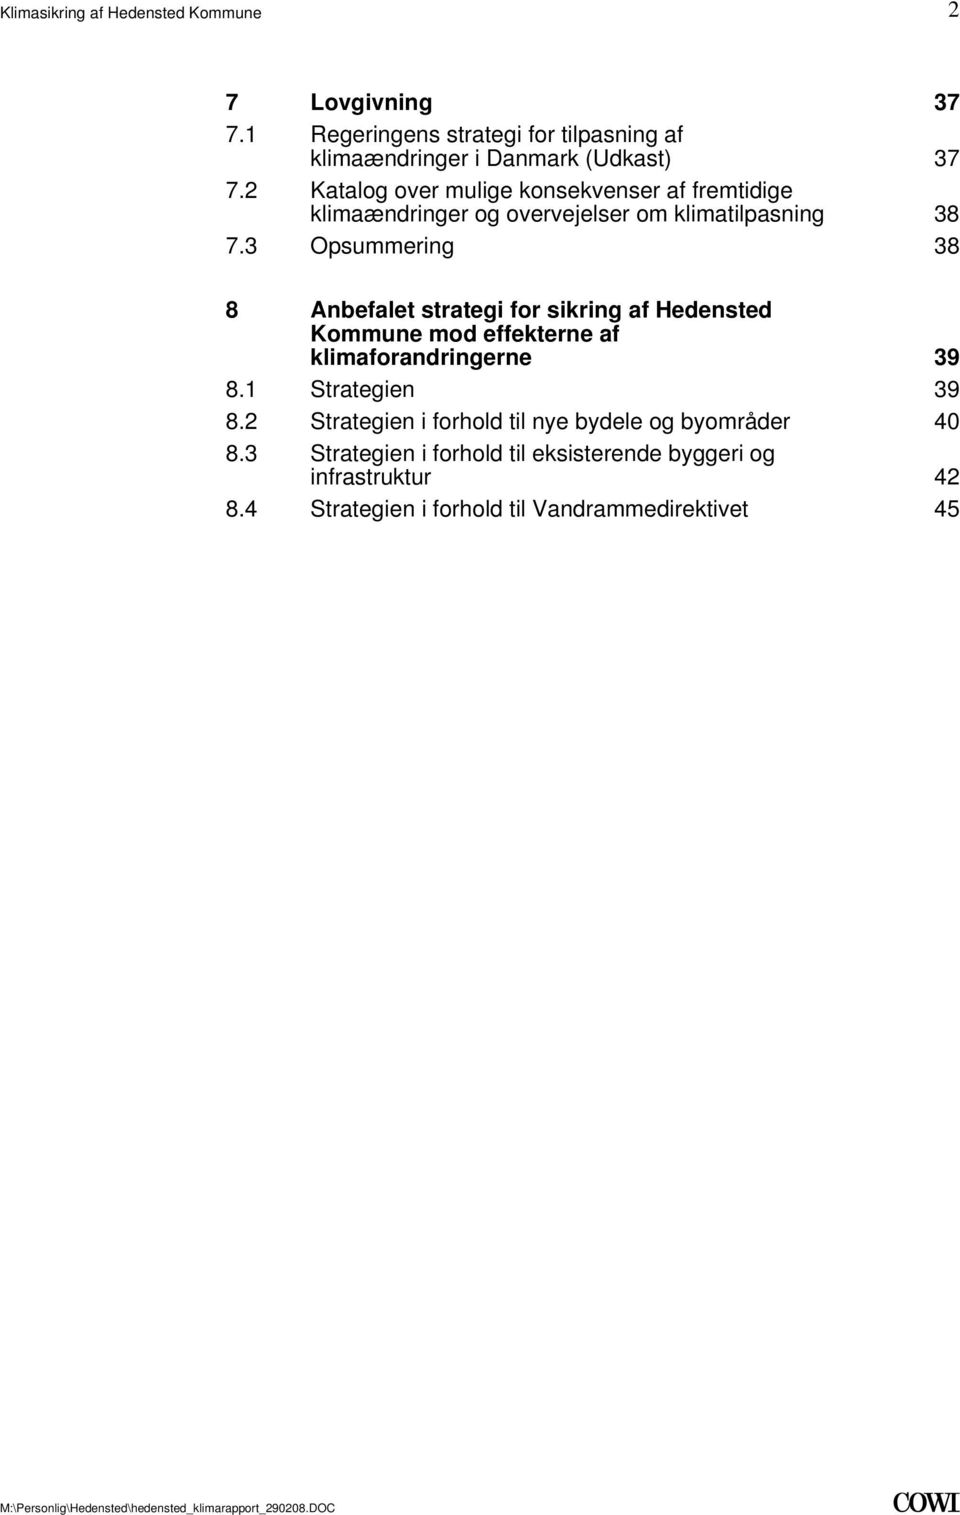 3 Opsummering 38 8 Anbefalet strategi for sikring af Hedensted Kommune mod effekterne af klimaforandringerne 39 8.1 Strategien 39 8.